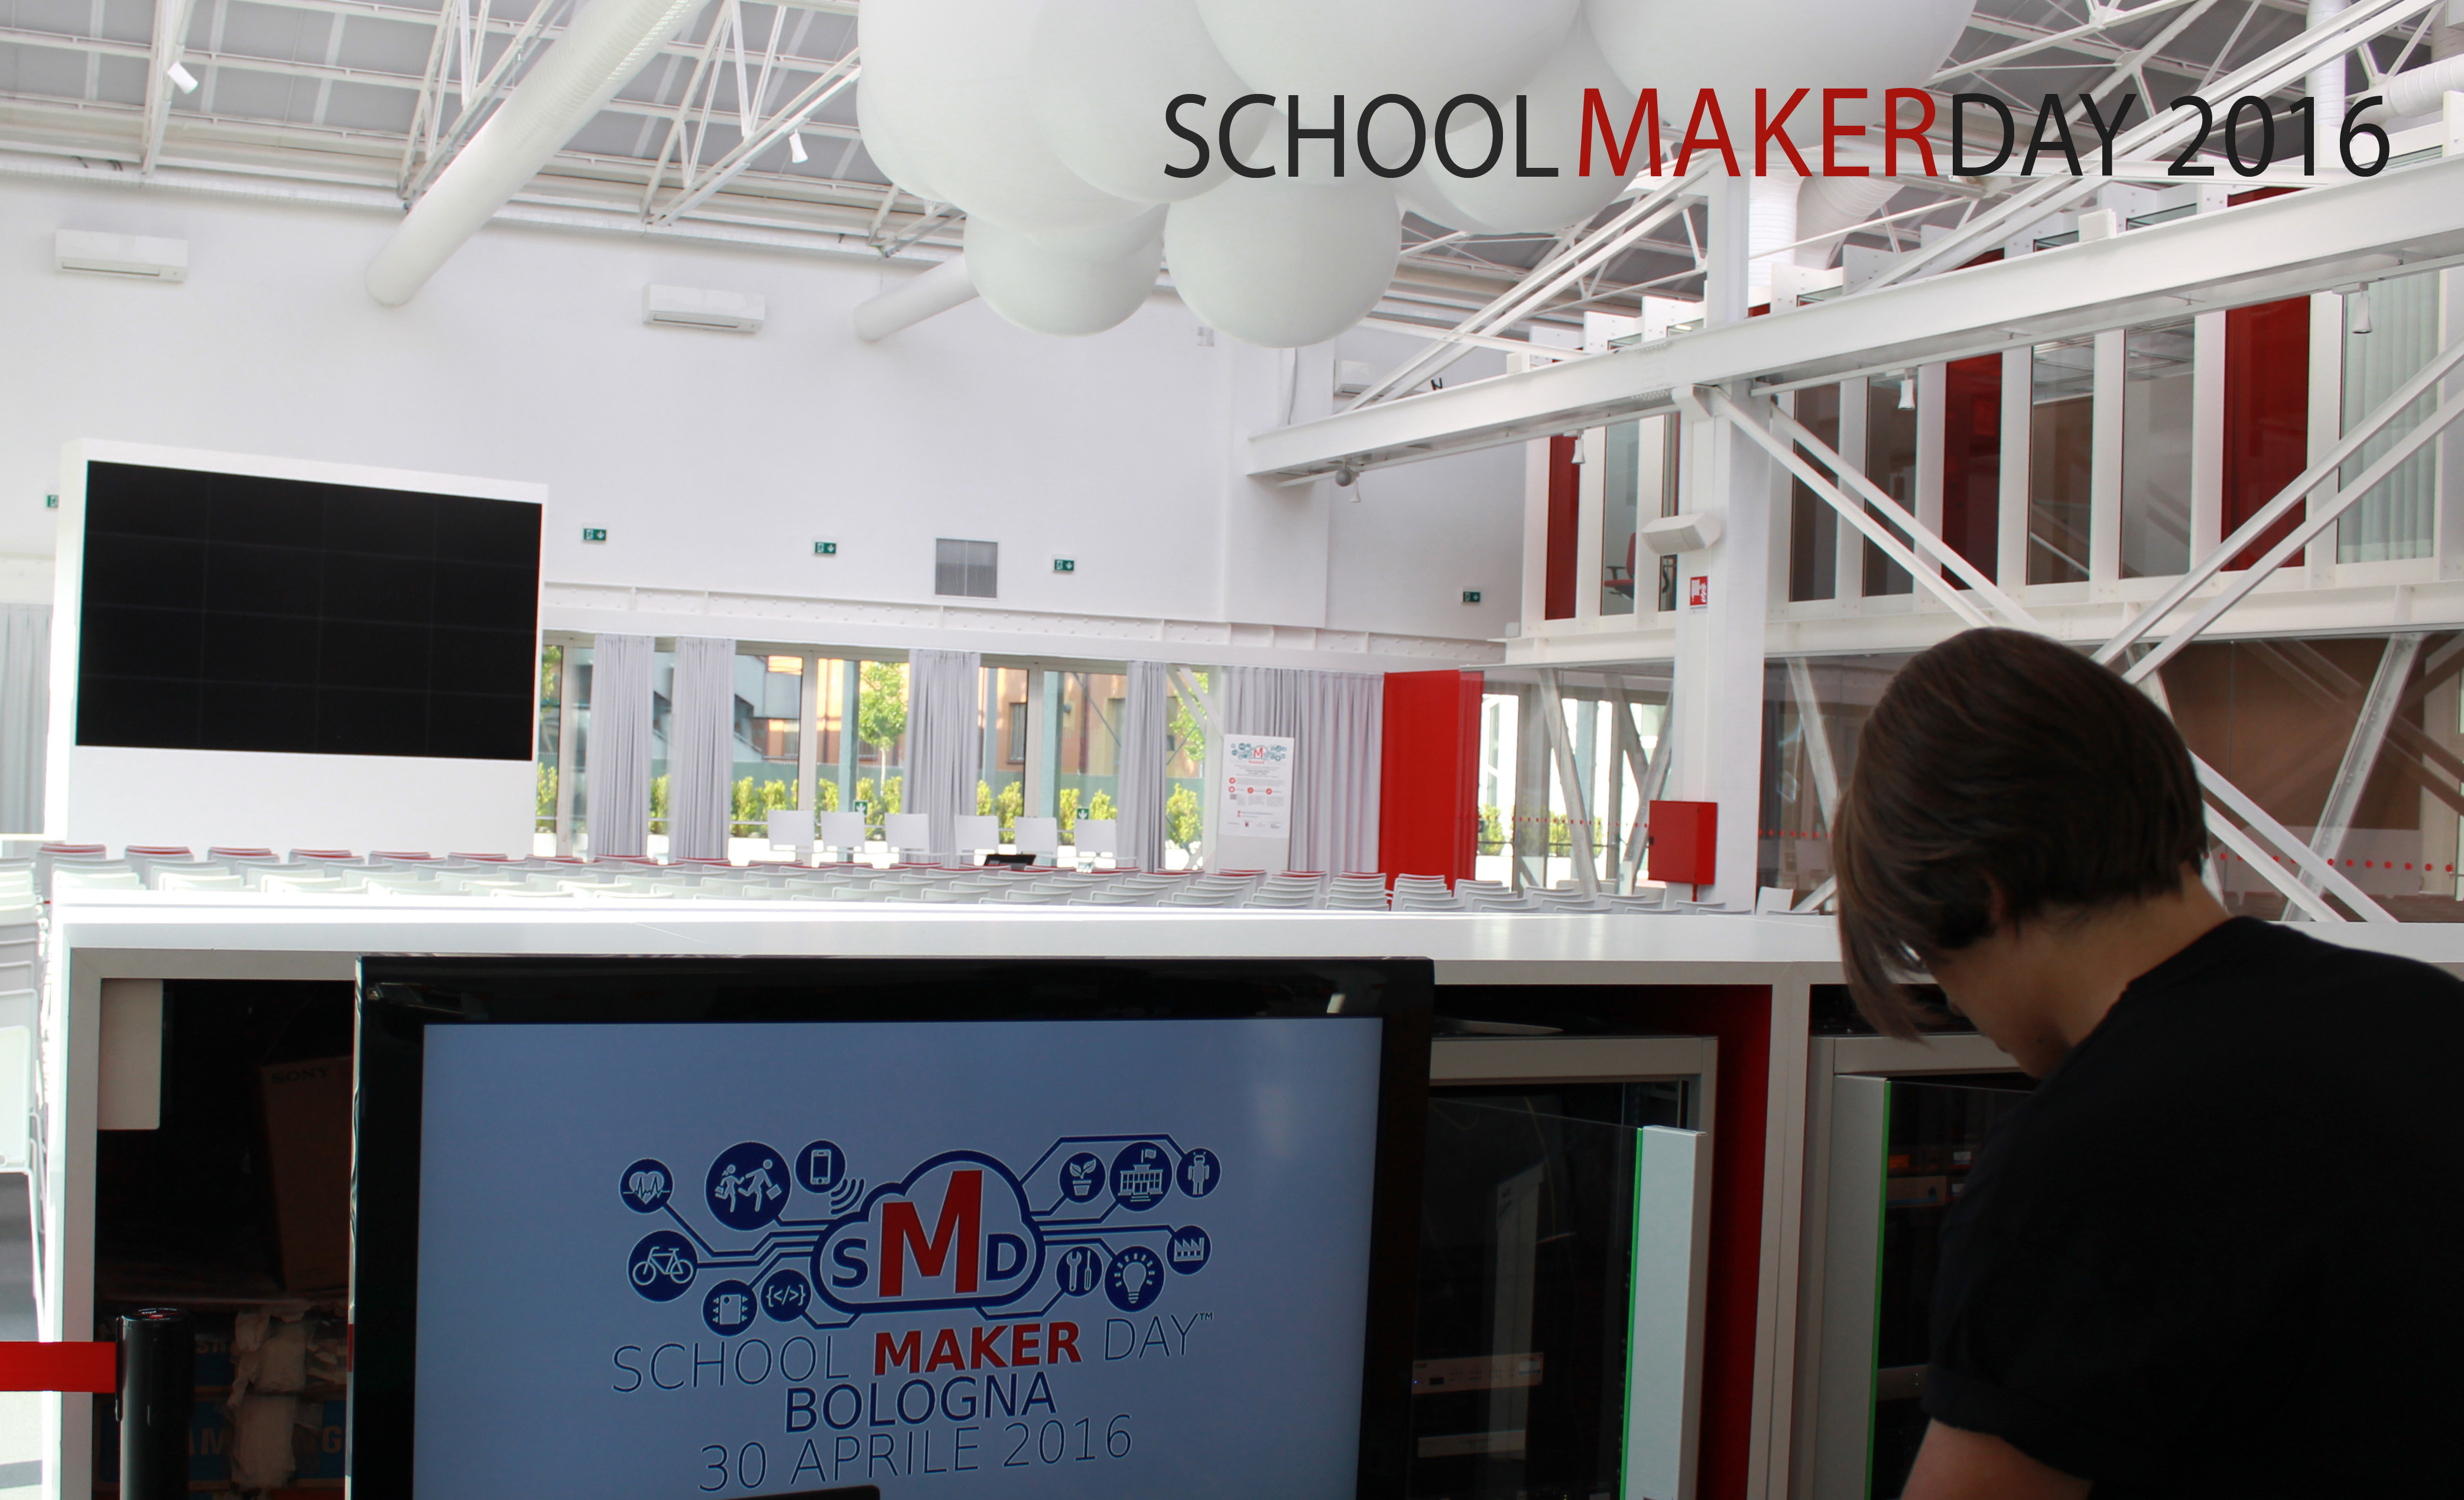 School Maker Day 2016